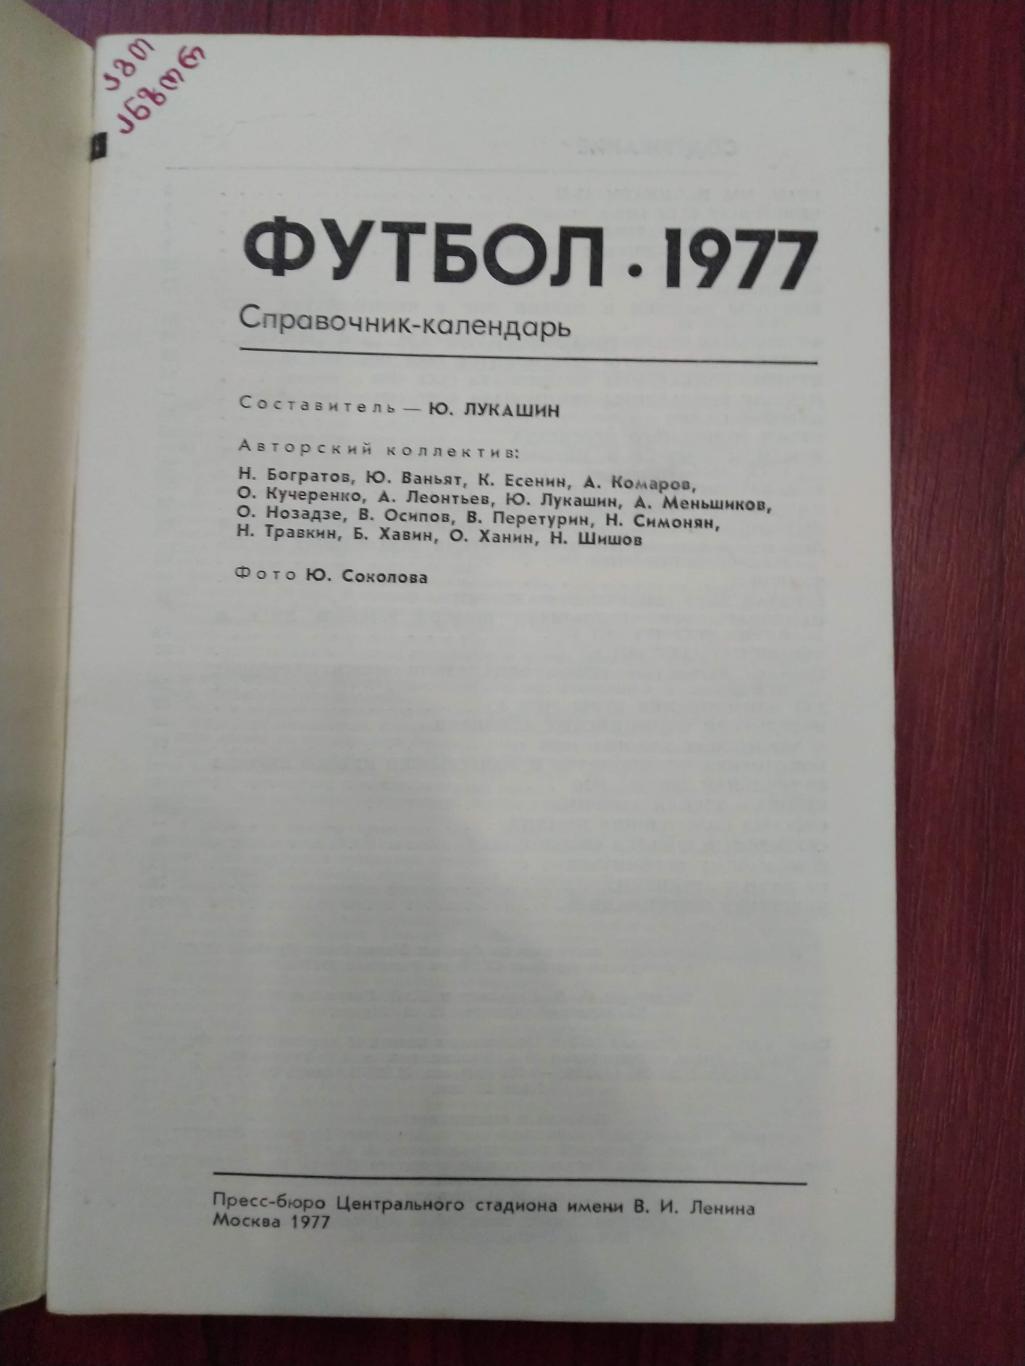 Справочник -календарь Футбол 1977 Москва 1